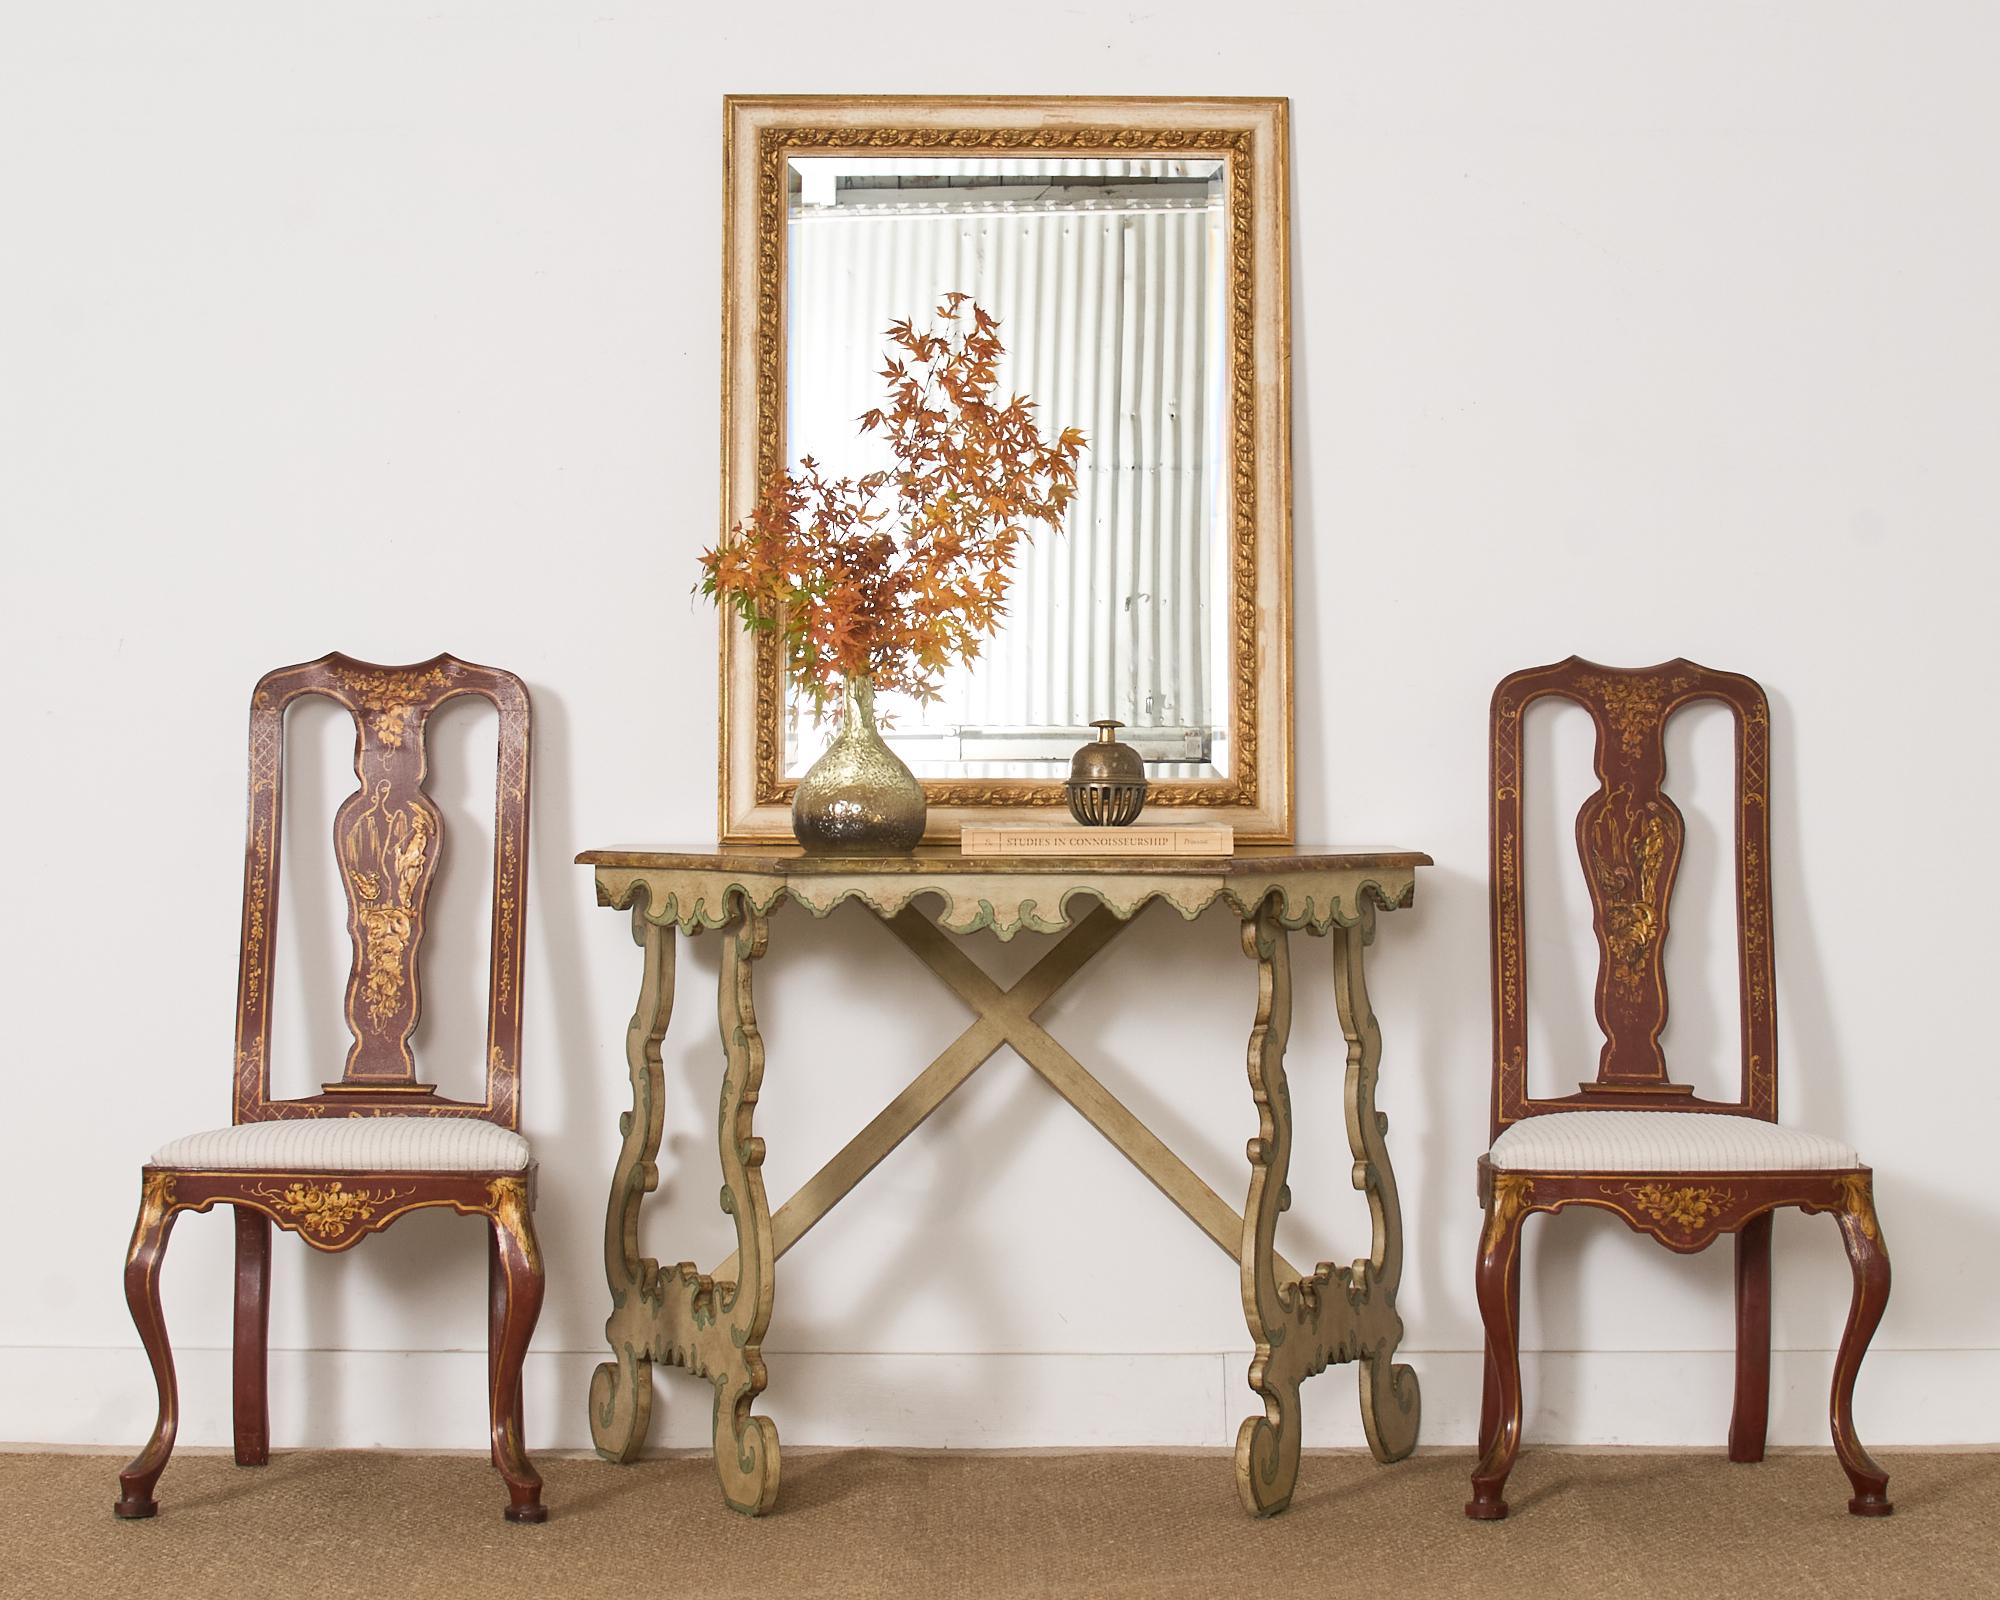 Paire de chaises de salle à manger de style Queen Anne du 19e siècle, magnifiquement exposées aux intempéries, avec une finition peinte décorée de chinoiseries. Les dosserets peints à la main et dorés ont un style moriage ou des pigments en relief.